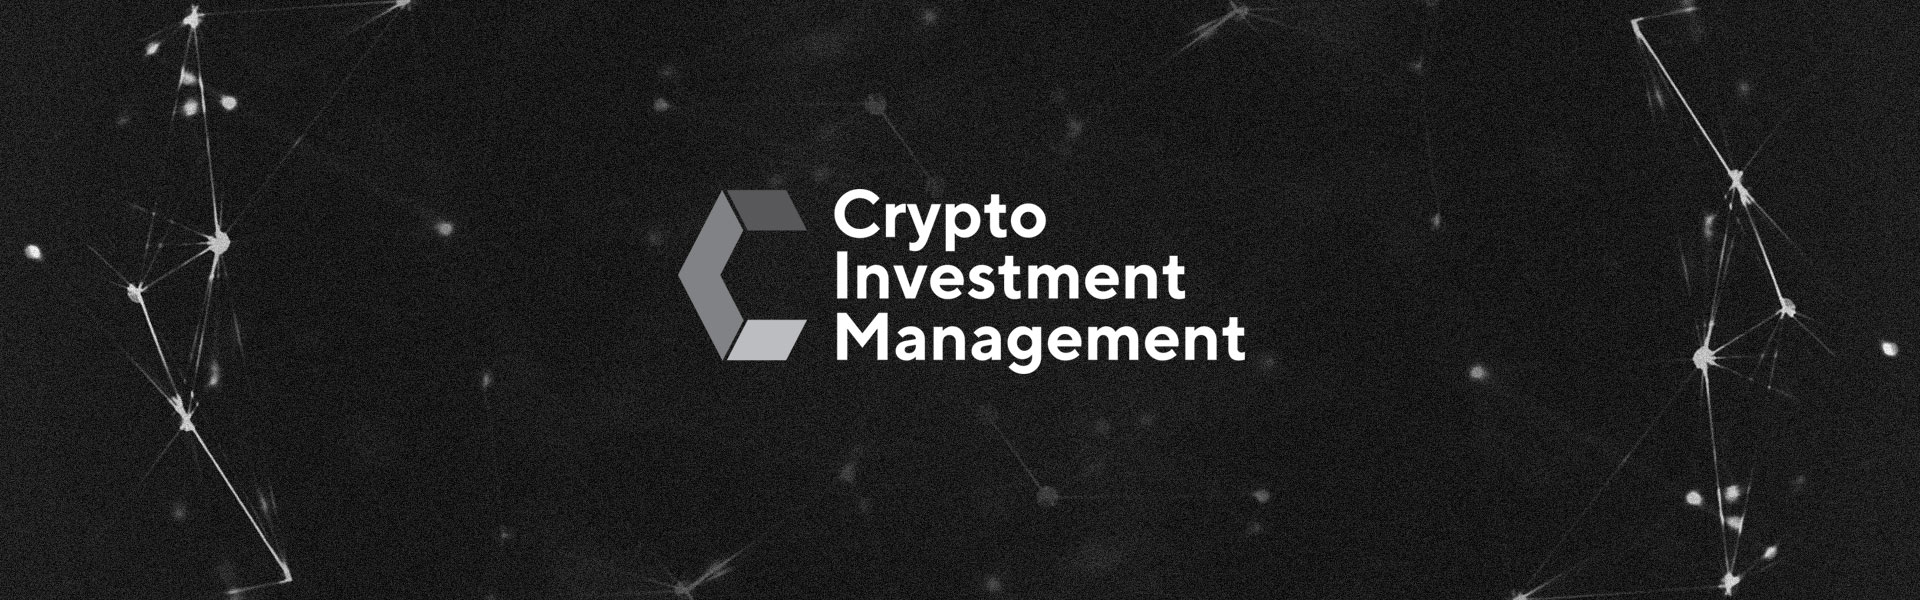 Разработка логотипа для консалтинговой компании Crypto Investment Management